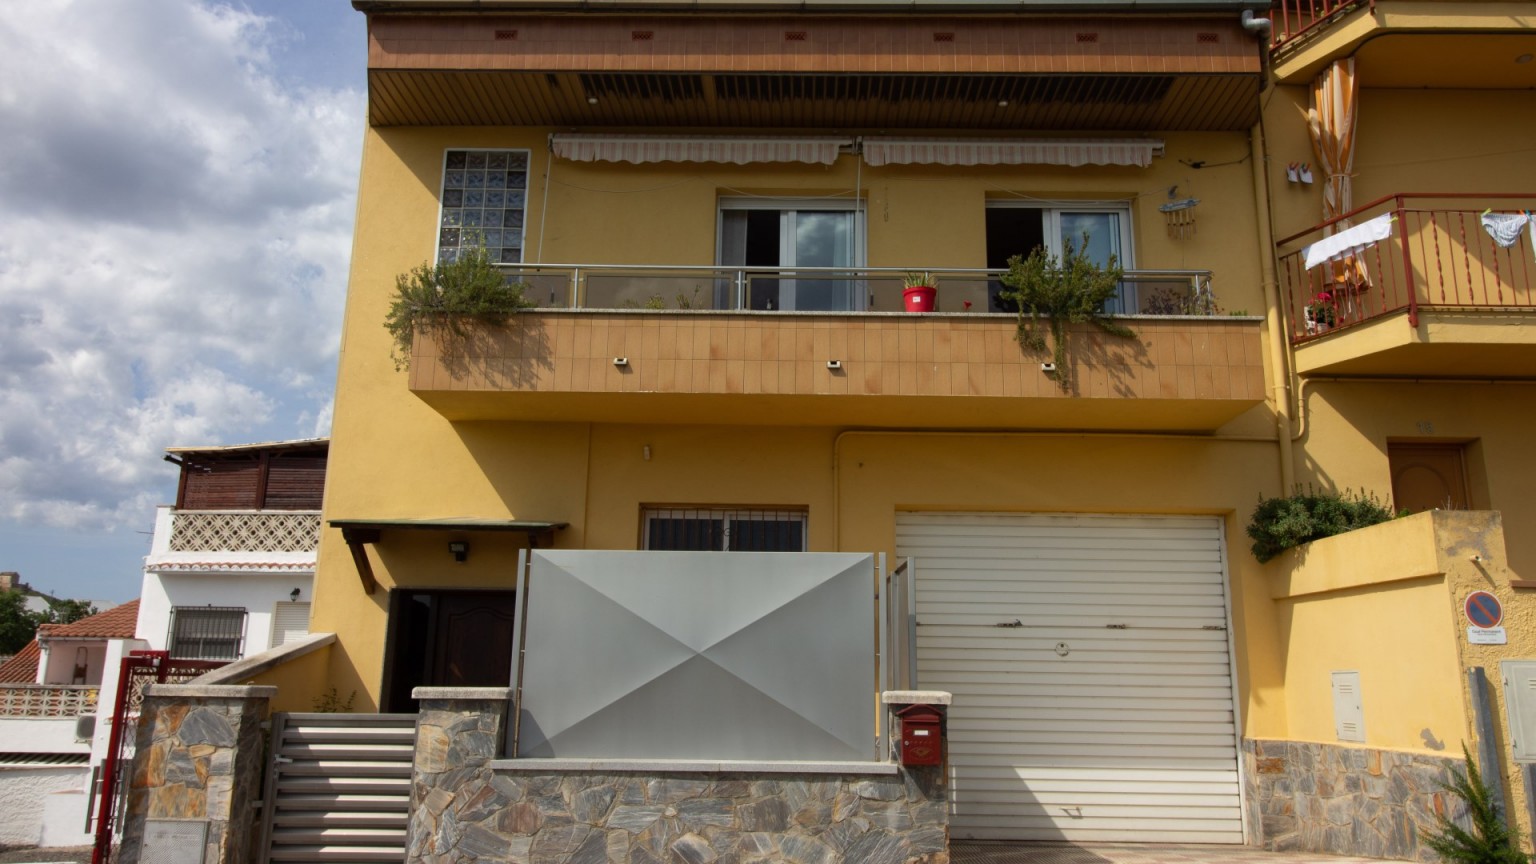 Maison à vendre dans le quartier Vila-roja de Gérone